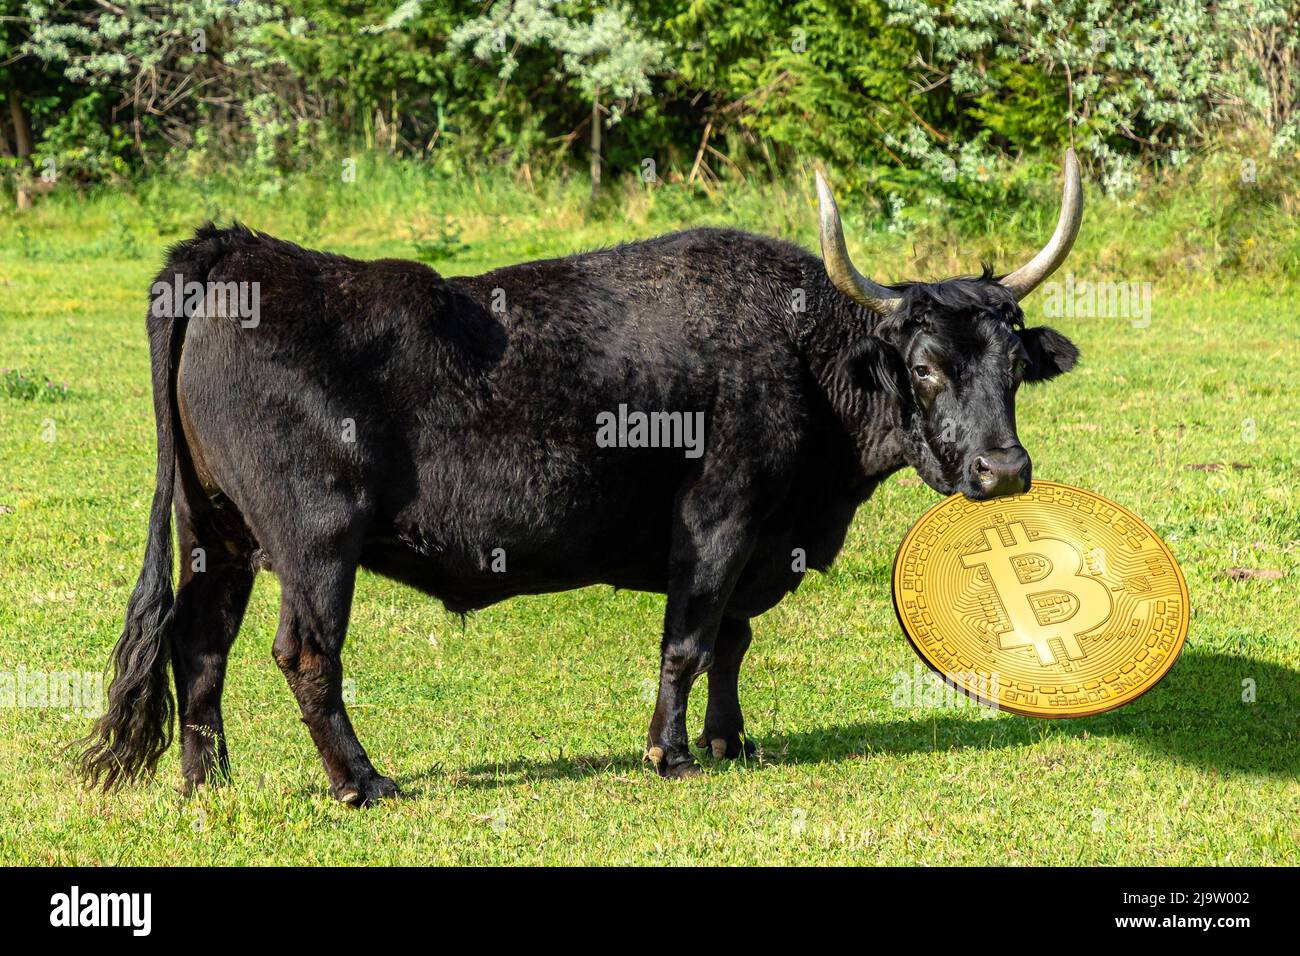 Concept du scénario haussier sur le prix du Bitcoin. Bull tenant une pièce de monnaie dorée de Bitcoin. Concept d'attaque à l'écosystème et à la réglementation des crypto-monnaies Banque D'Images